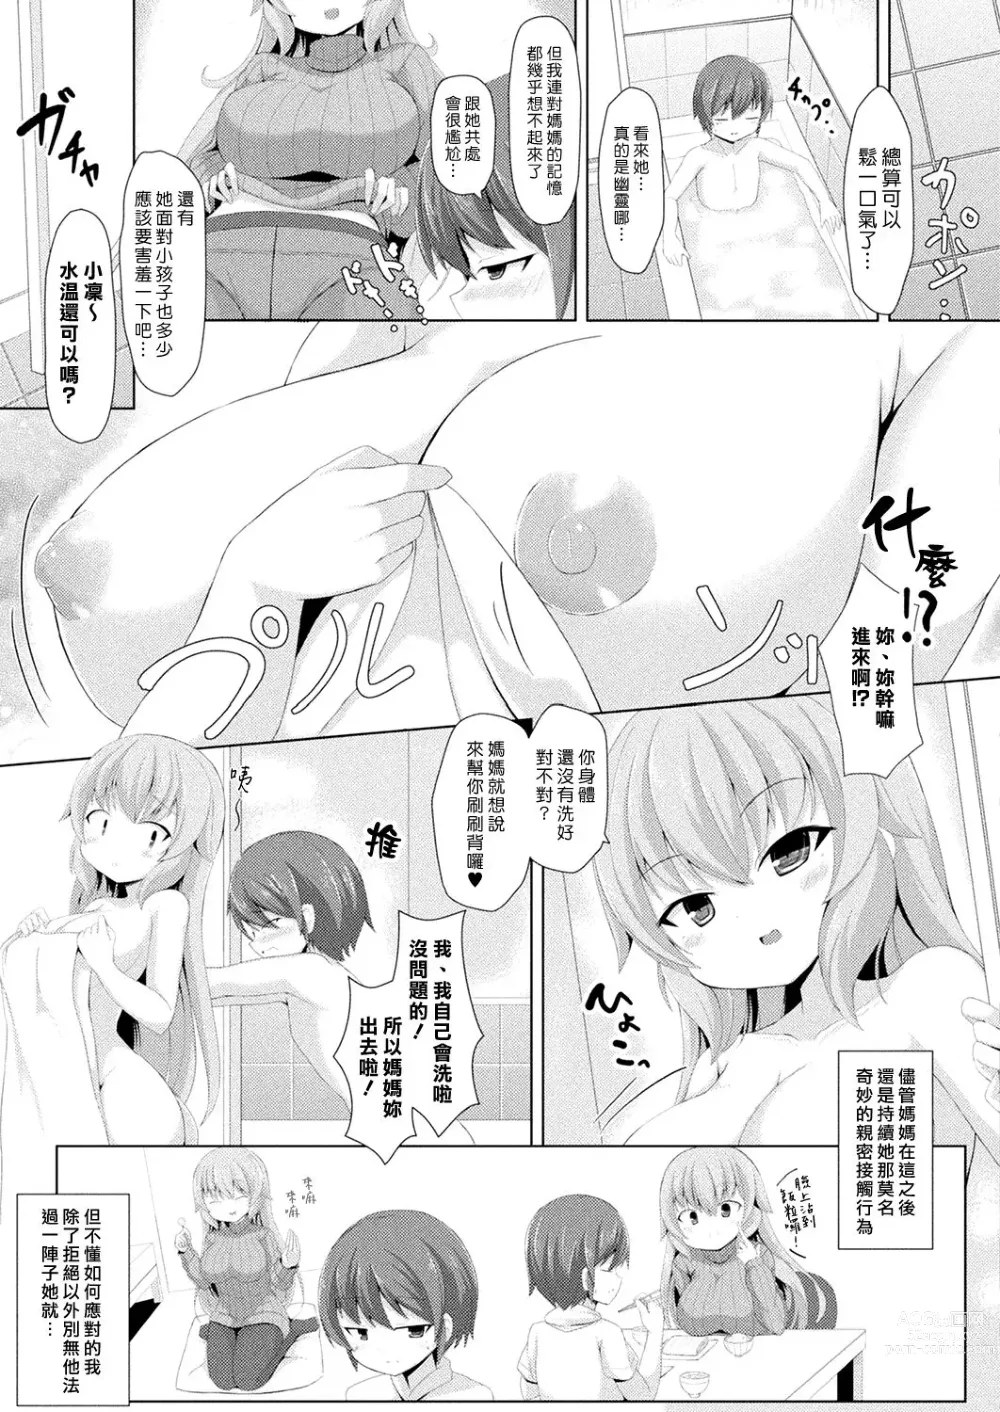 Page 3 of manga 媽媽什麼都看透囉